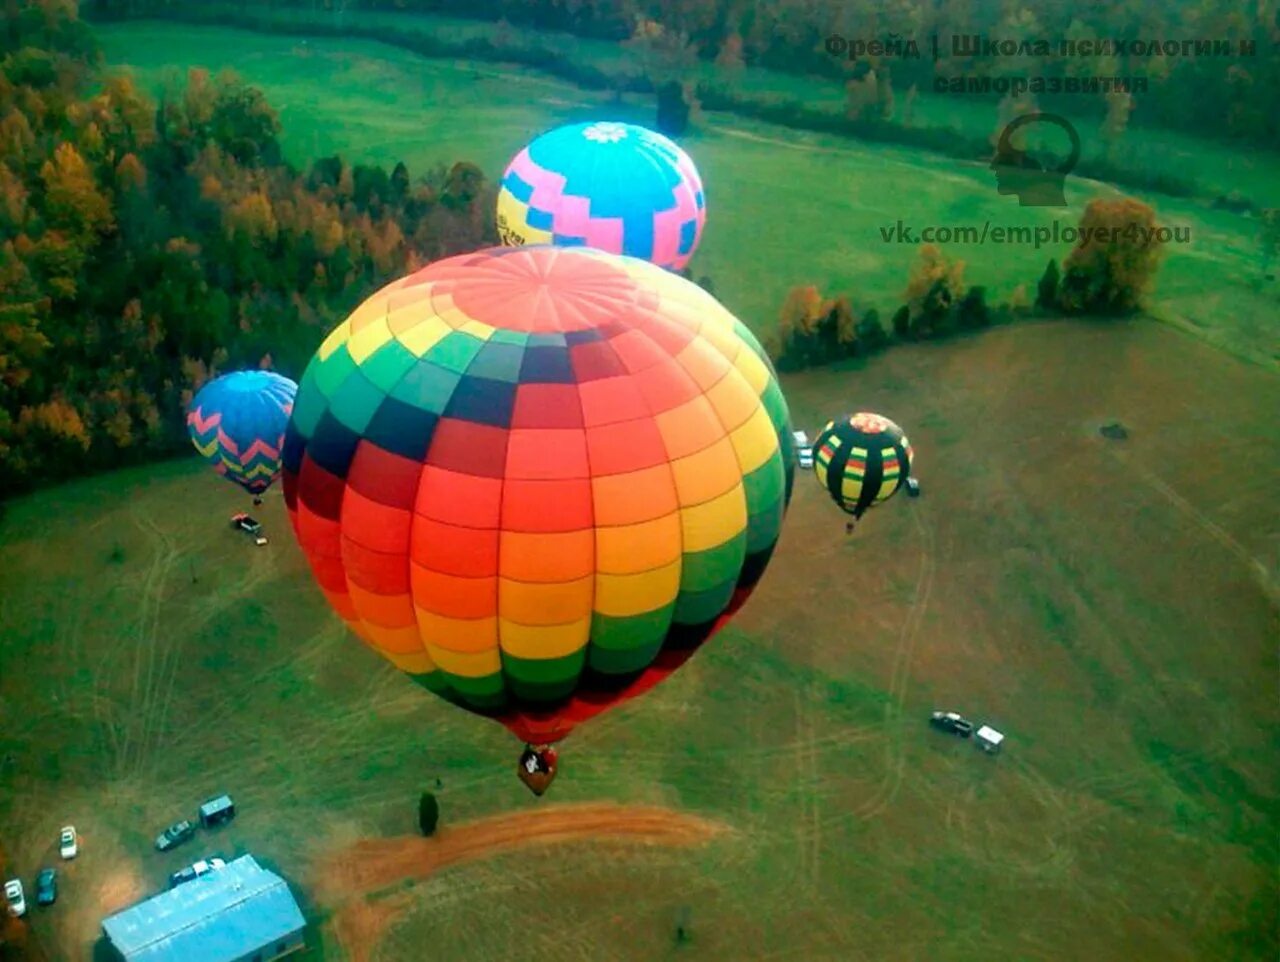 Шара на шаре сегодня. Воздушные шары. Большой воздушный шар. Воздушный шар вид сверху. Воздушные шары летательные.